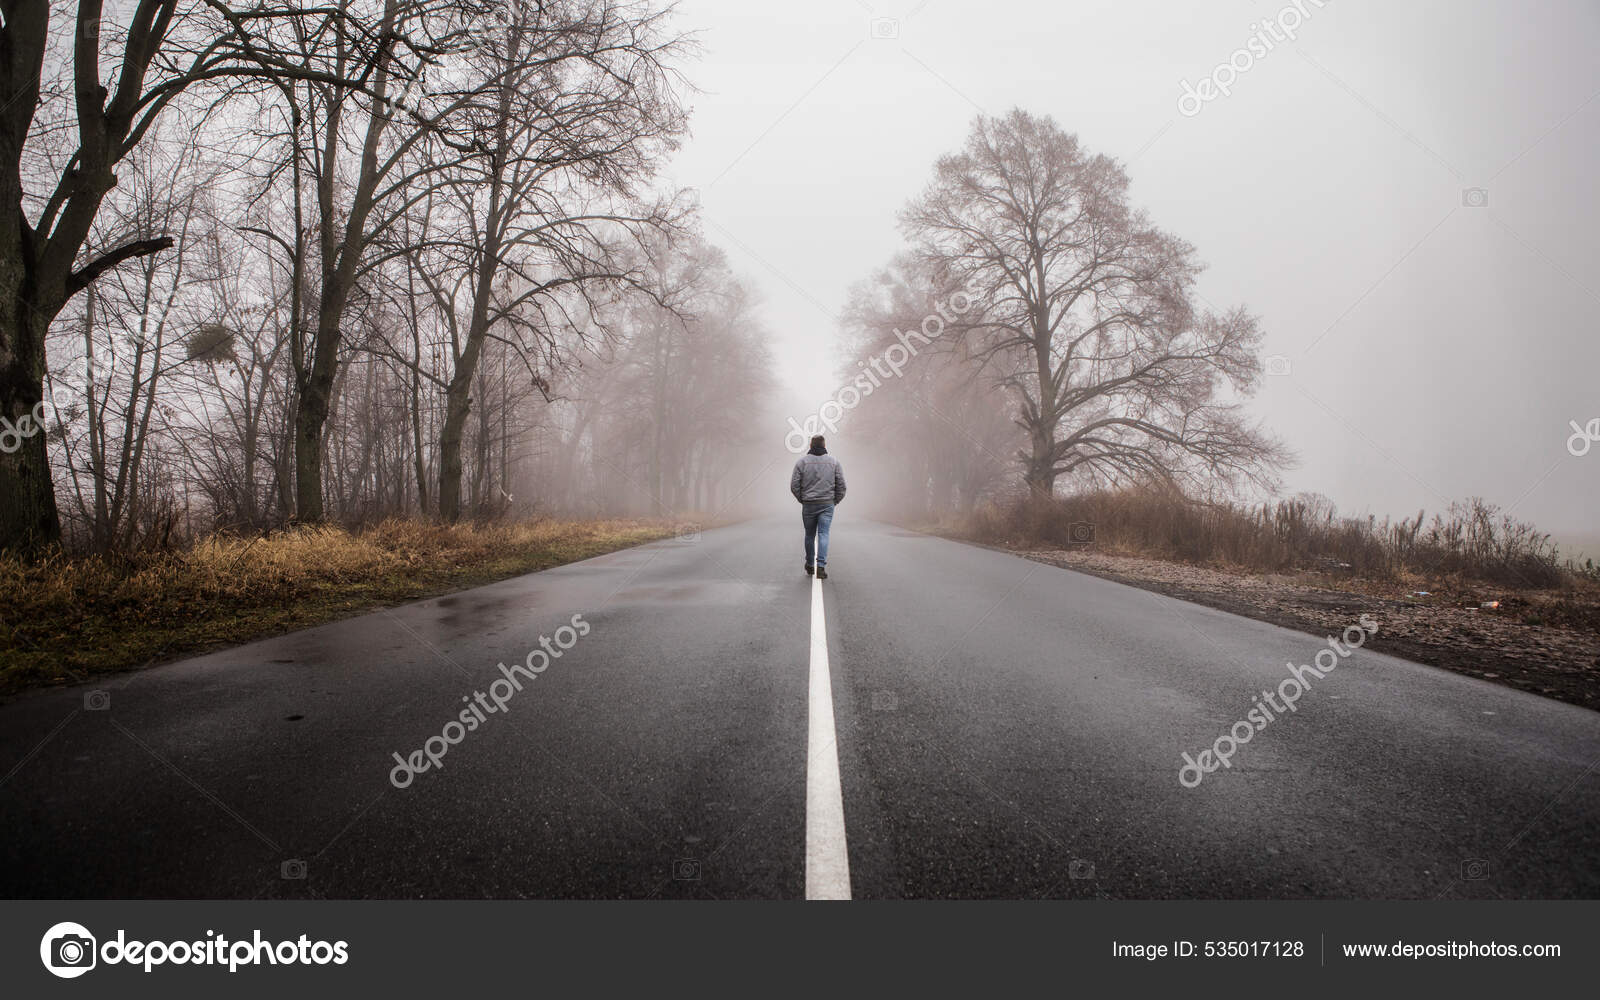 sad person walking away